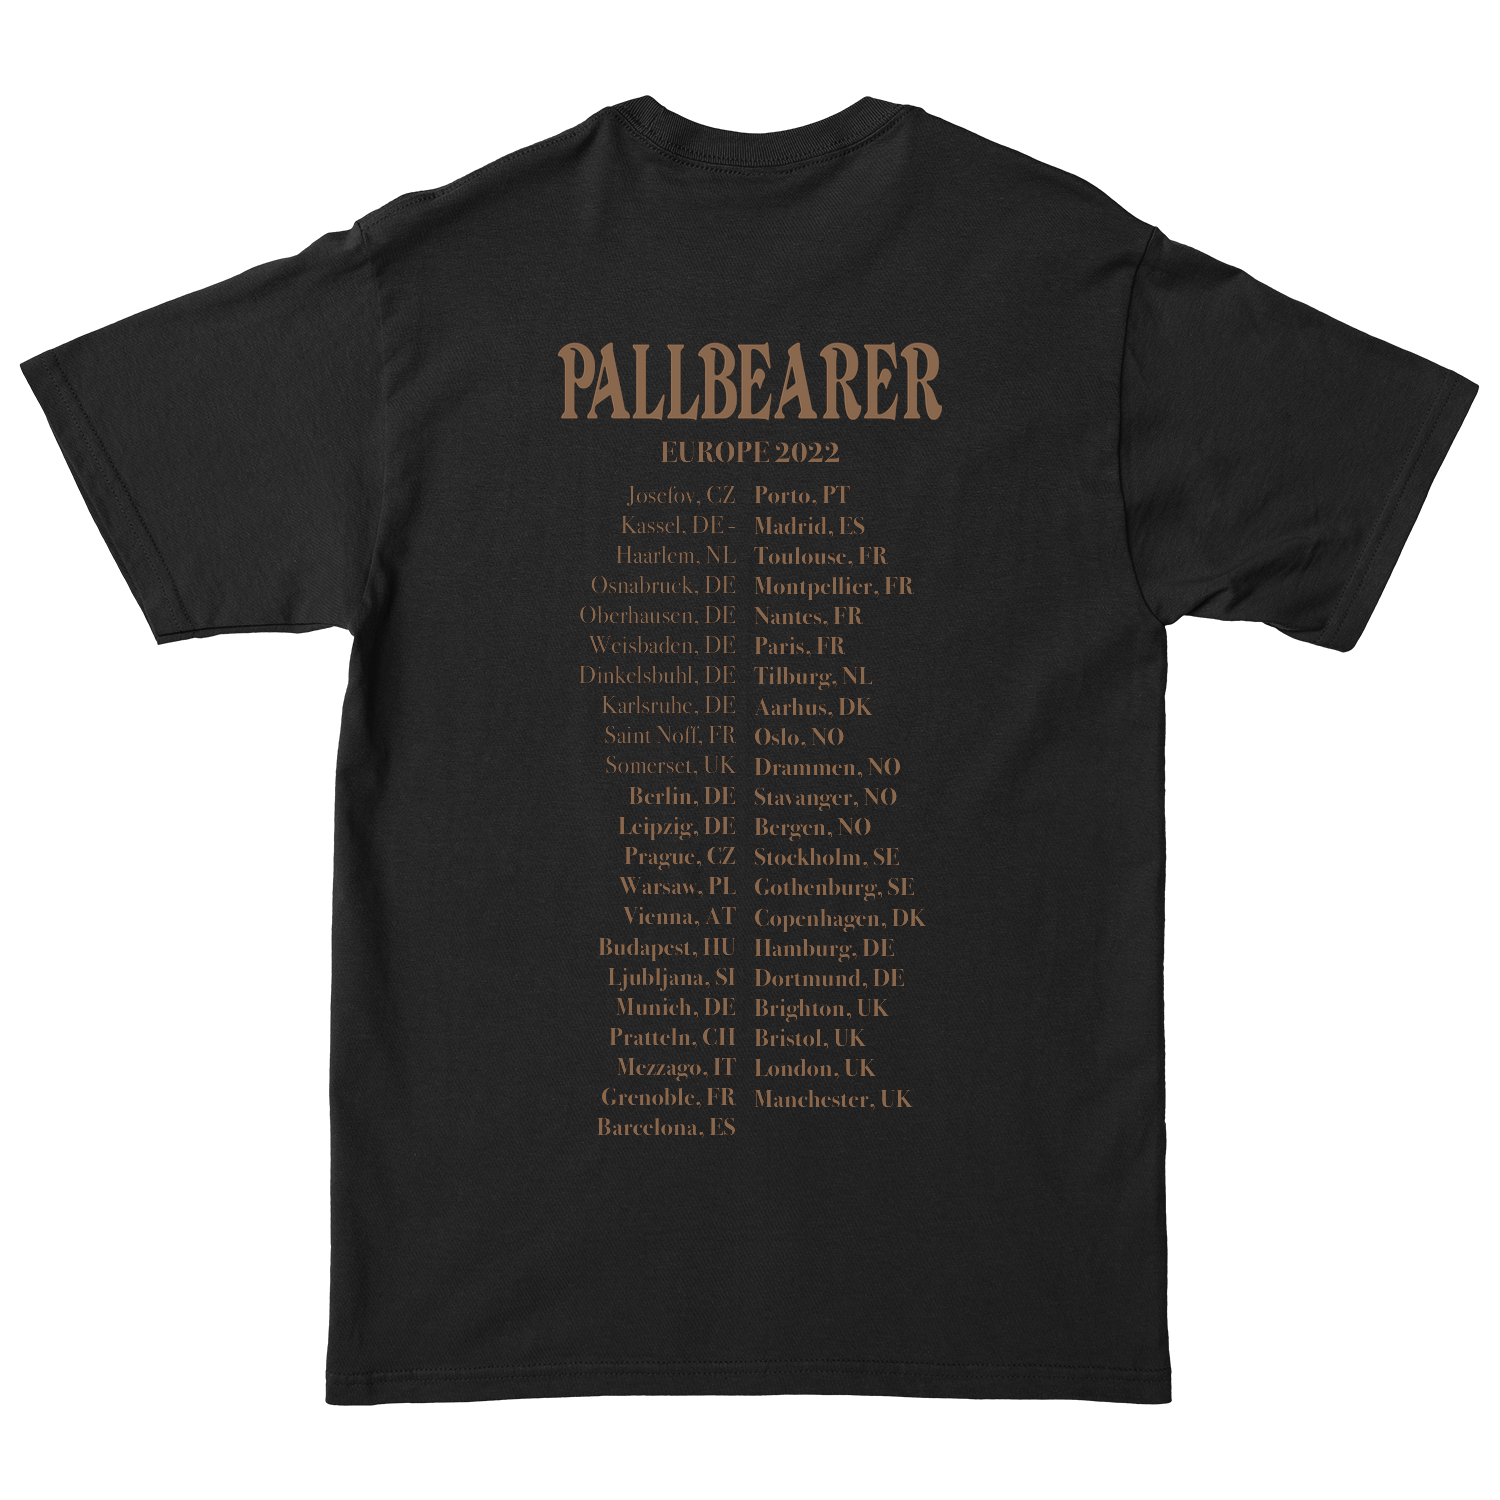 PALLBEARER "The Guide Poster" Black T-Shirt